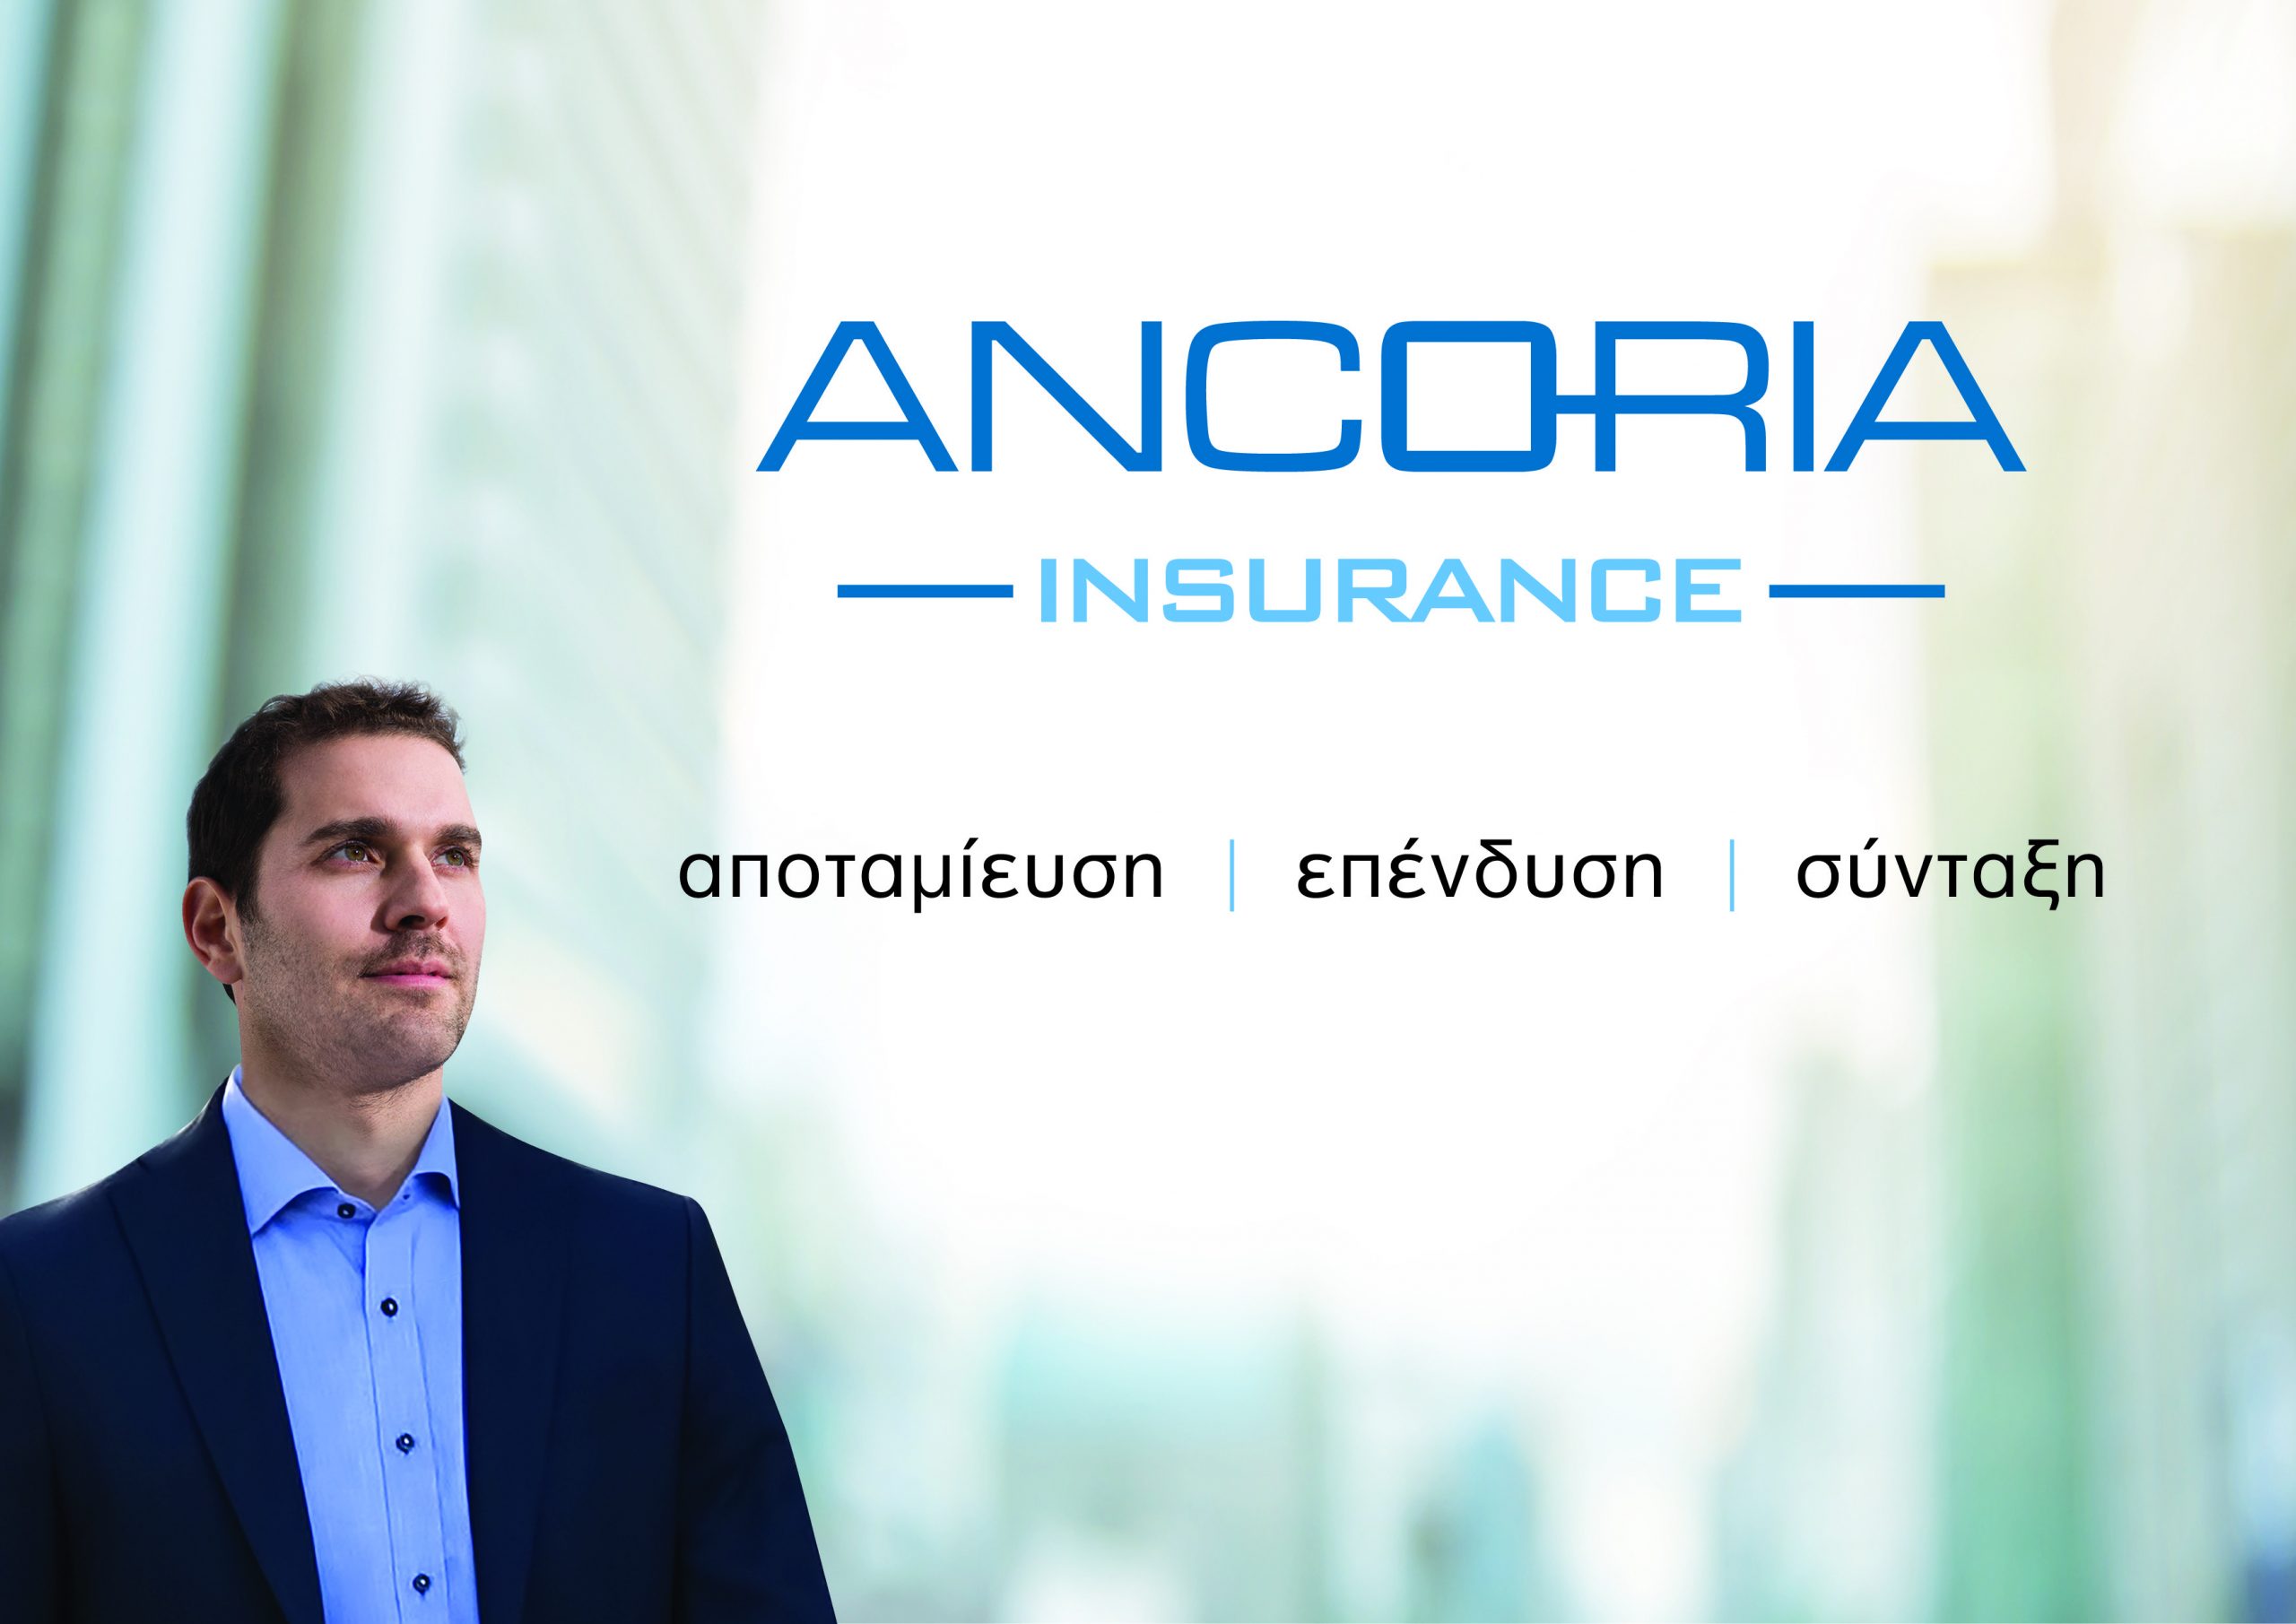 Ενημέρωση για αλλαγές σχετικά με το Ancoria Συνταξιοδοτικό Ταμείο Μετρητών